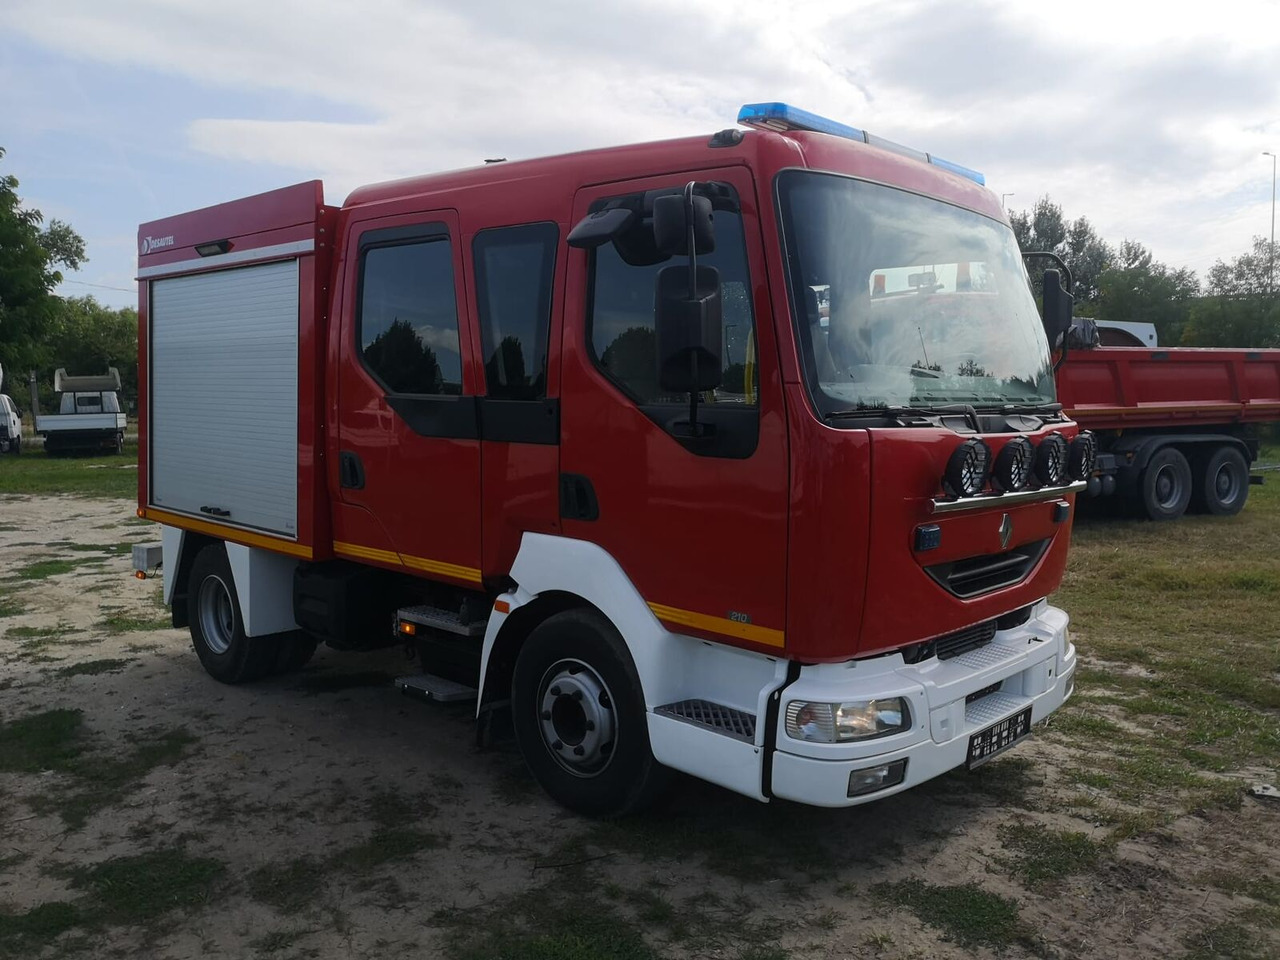 Пожарная машина Renault Midlum 210 dci Fire Truck - 2000l water + 170l foam: фото 7